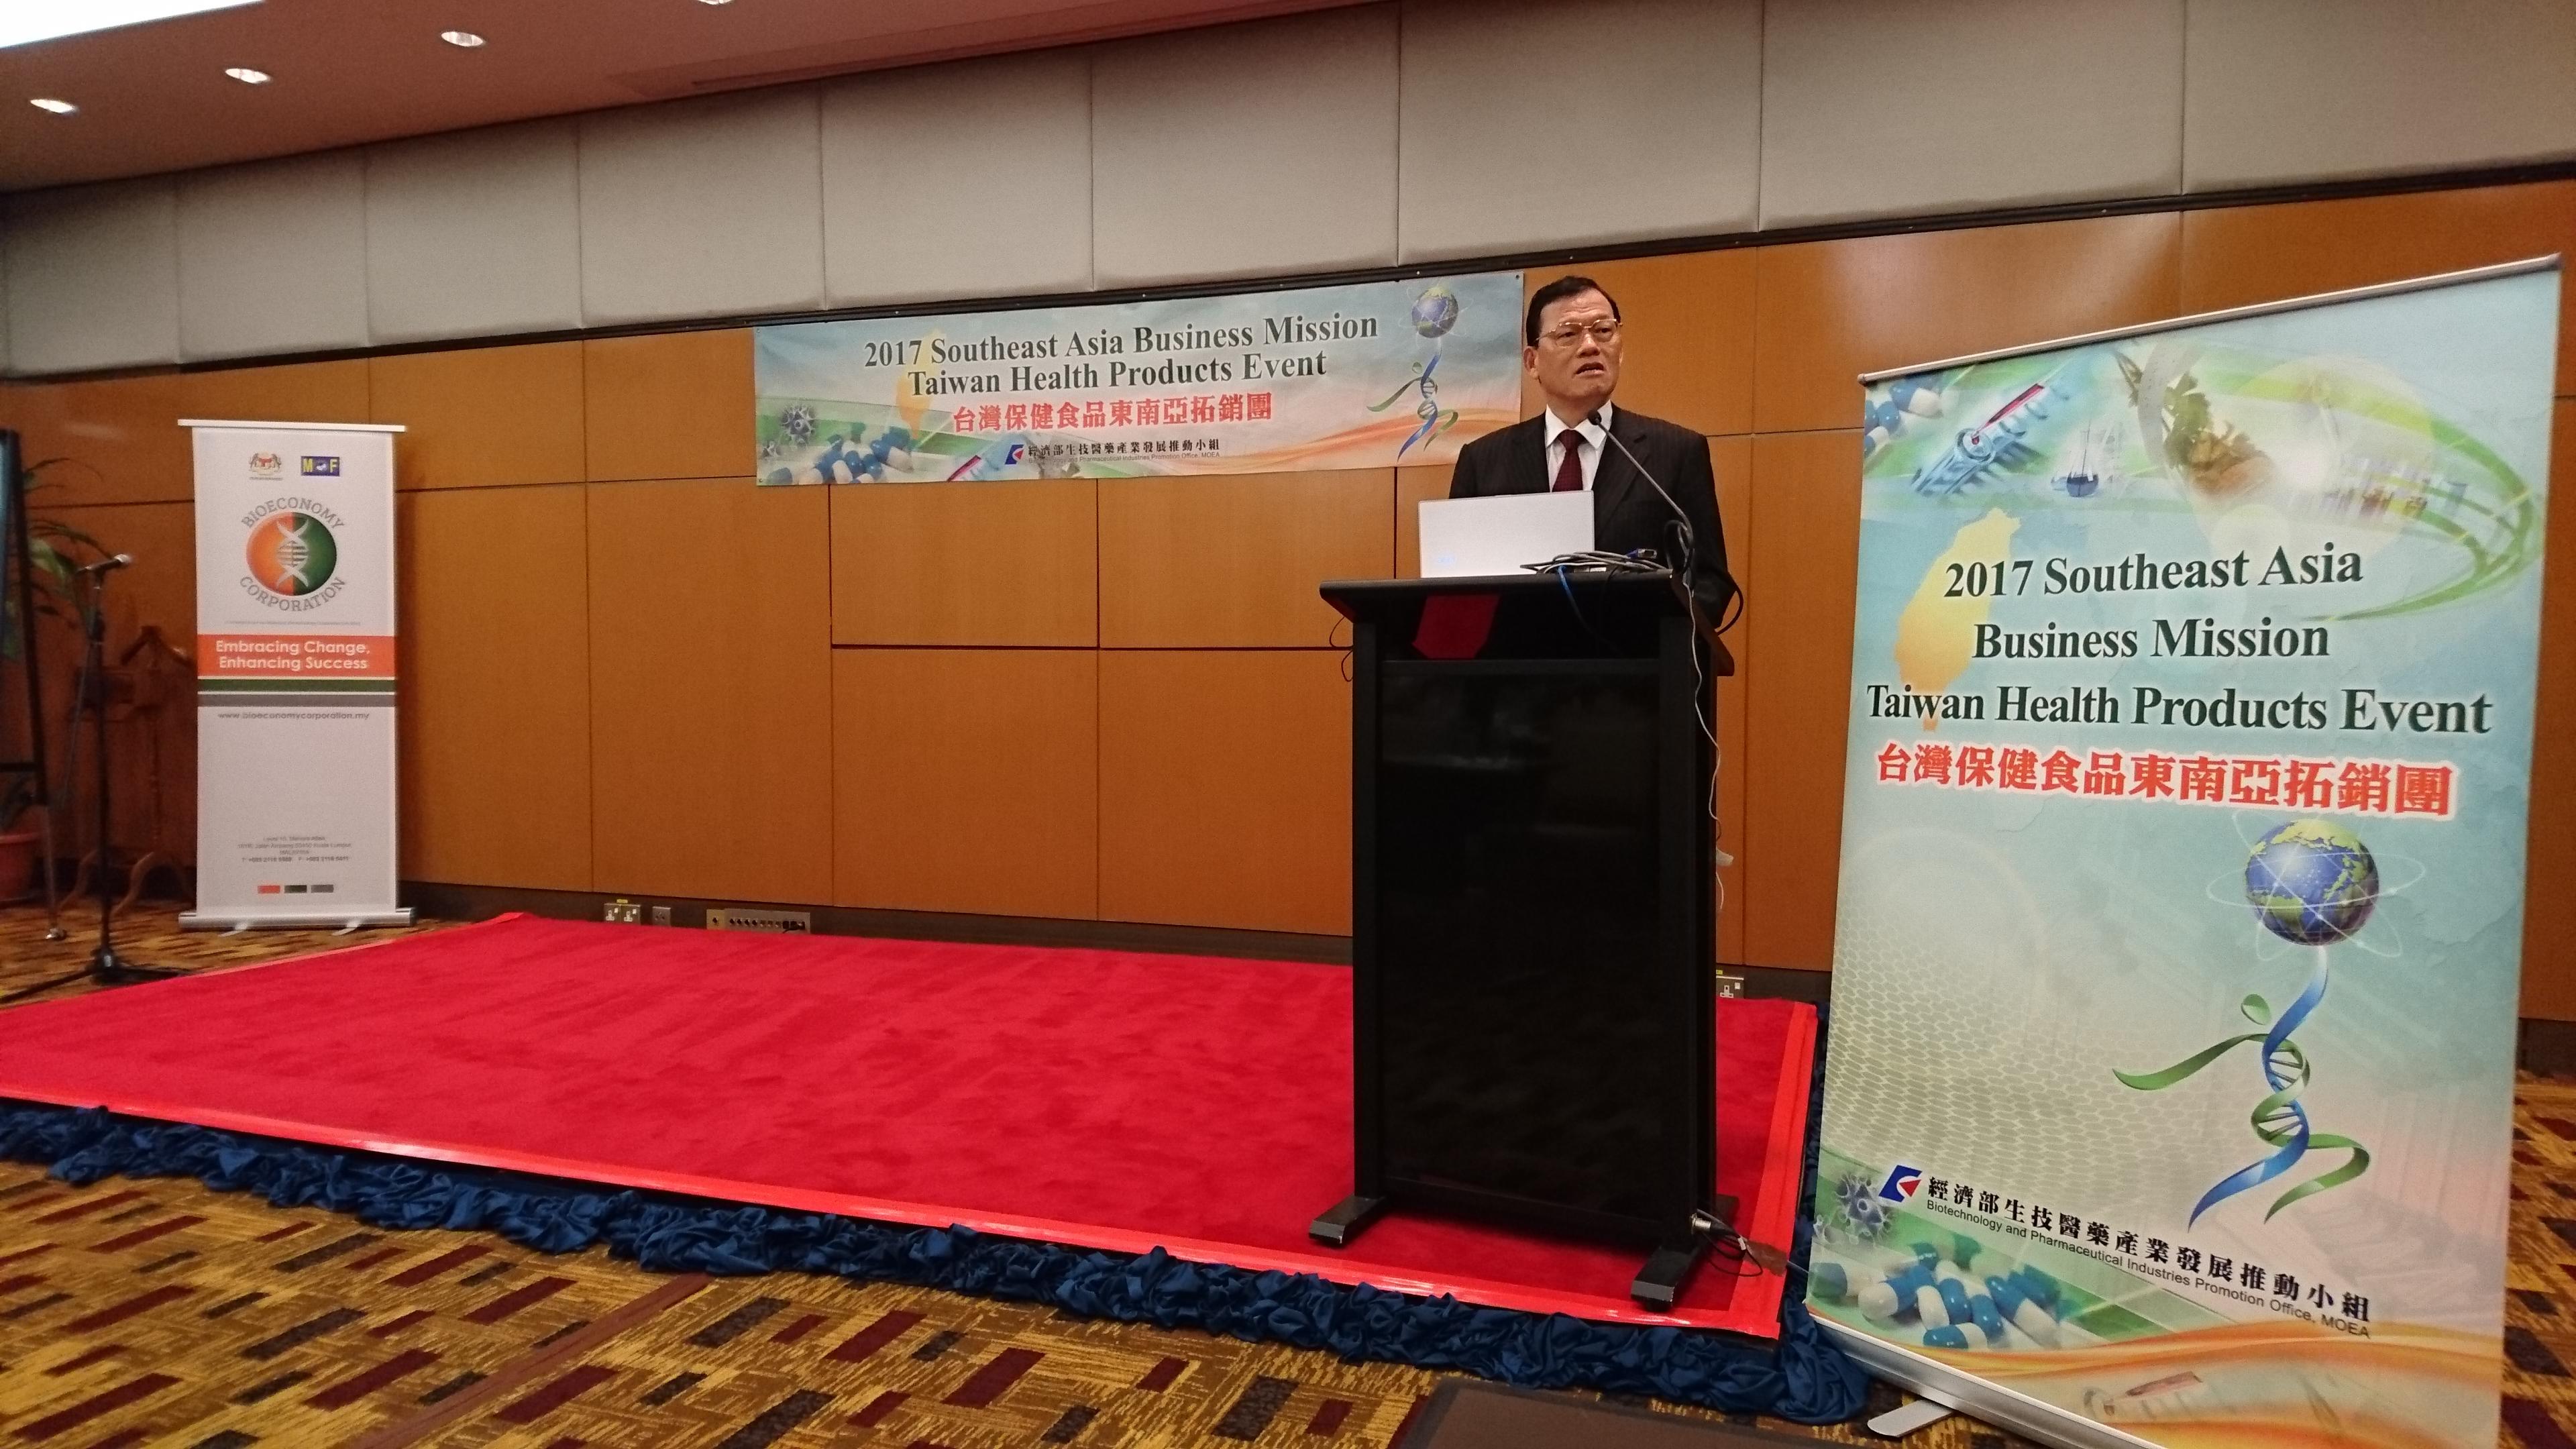 駐馬來西亞臺北經濟文化辦事處章大使計平出席臺灣保健食品技術與產品發表會暨商機洽談會
